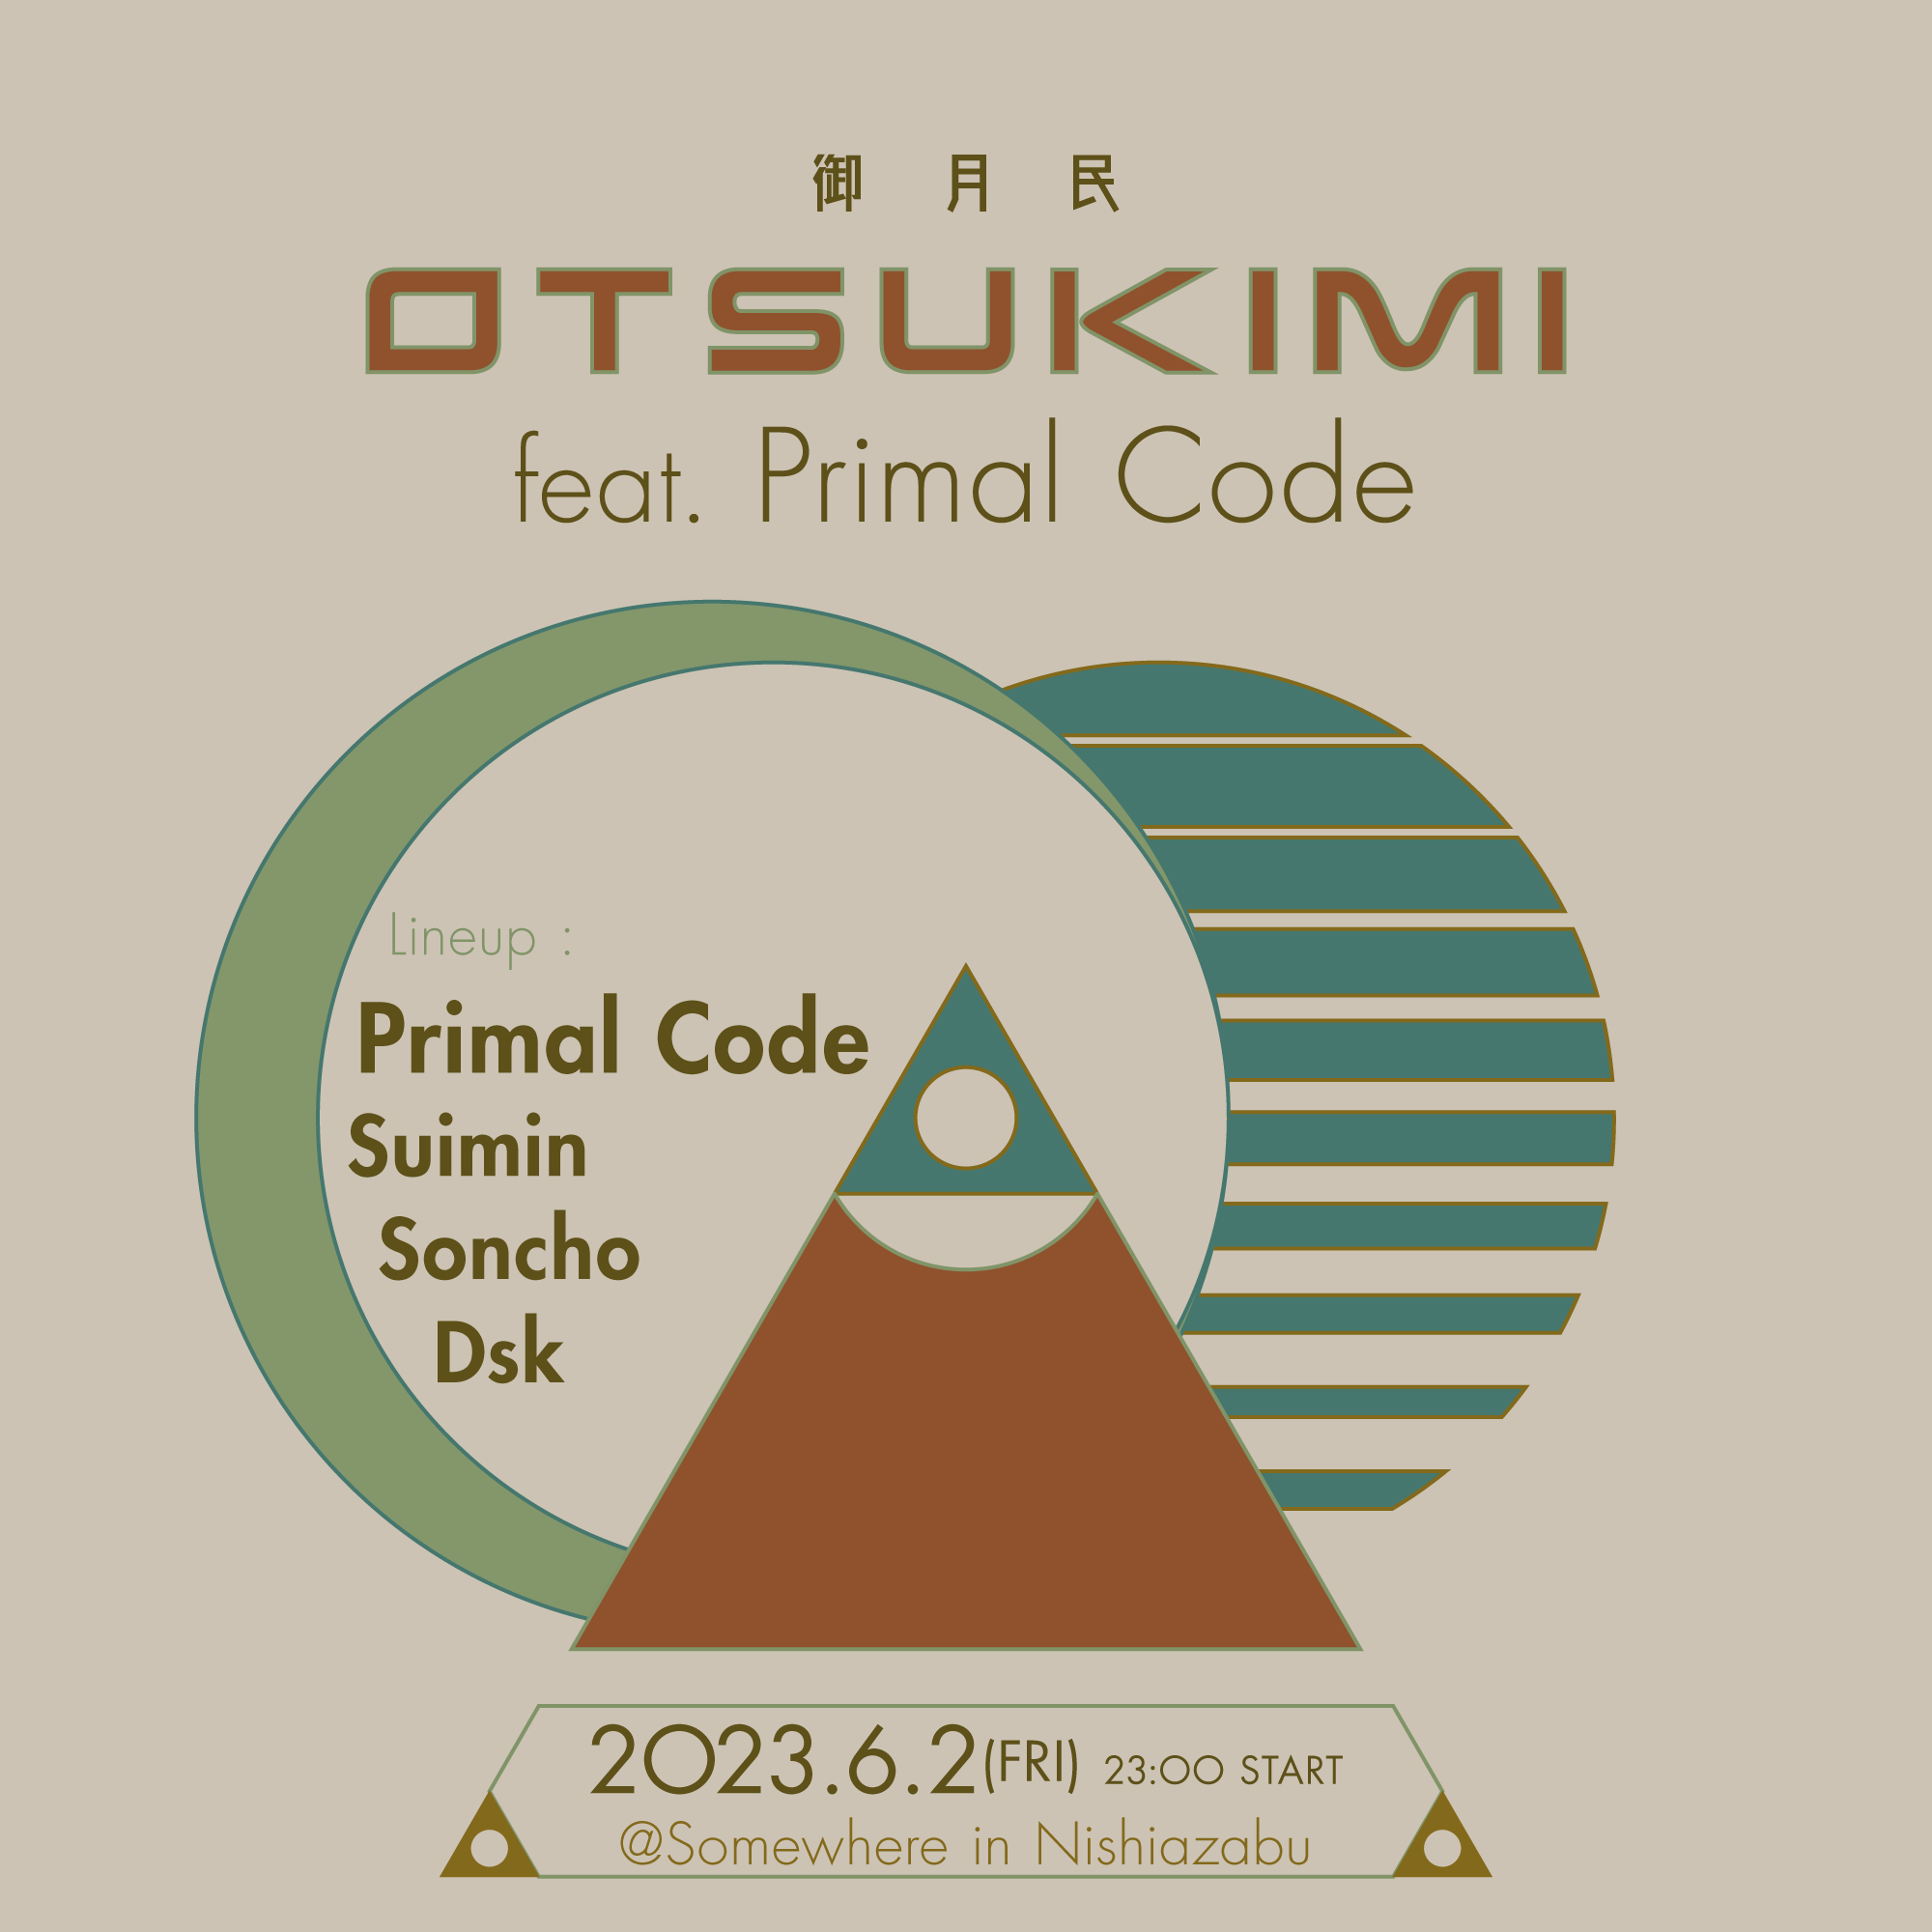 御月民 -OTSUKIMI- feat. Primal Code - フライヤー表